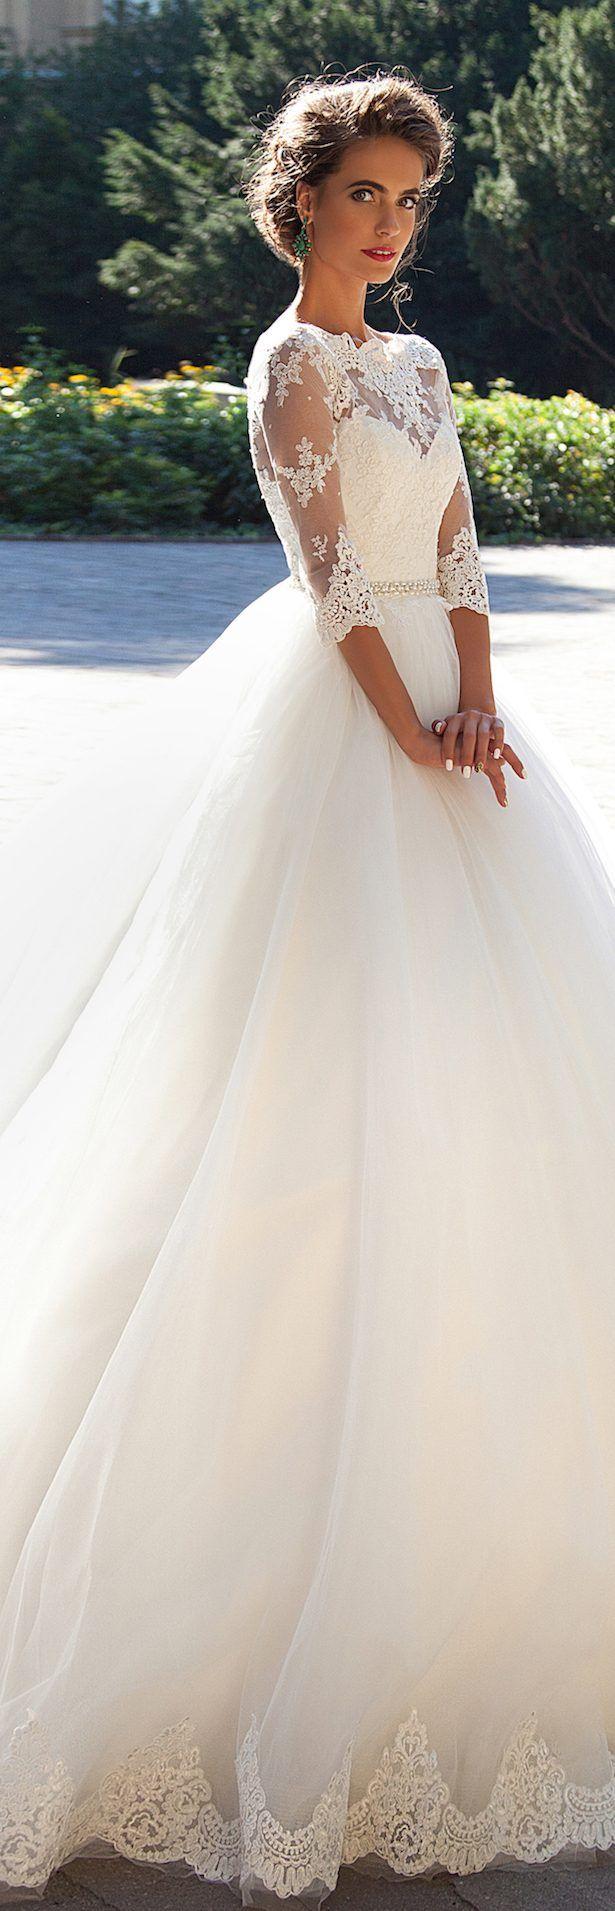 زفاف - 20 Ballgown Wedding Dresses That Will Leave You Speachless